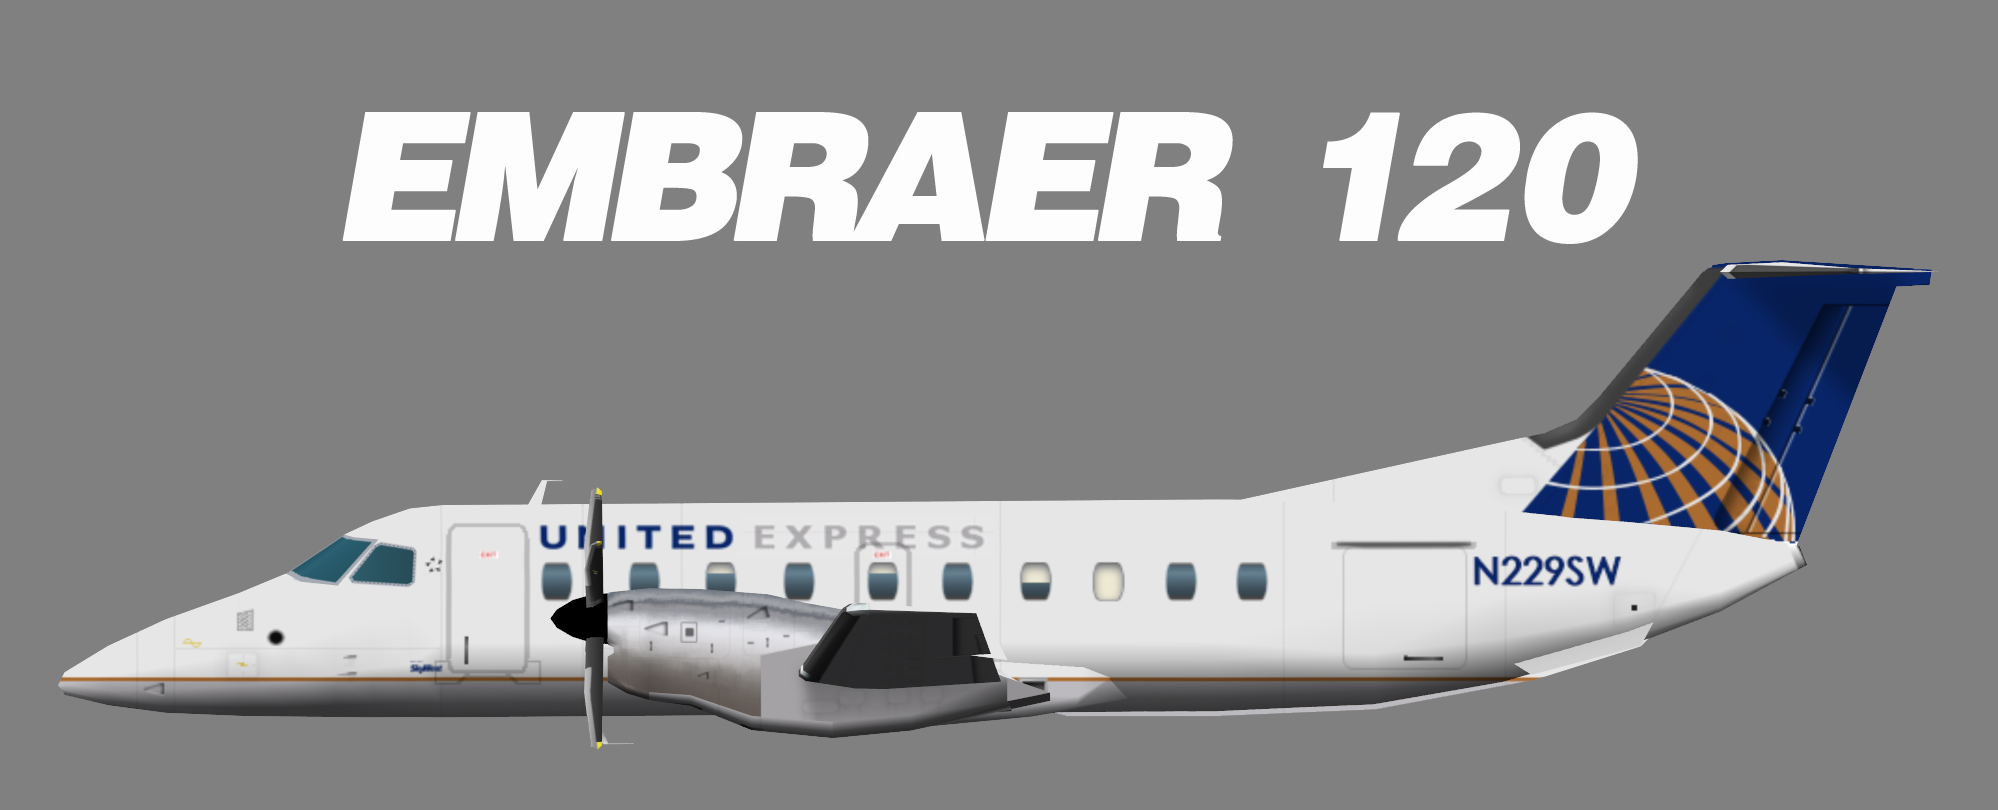 EmbraerEMB120